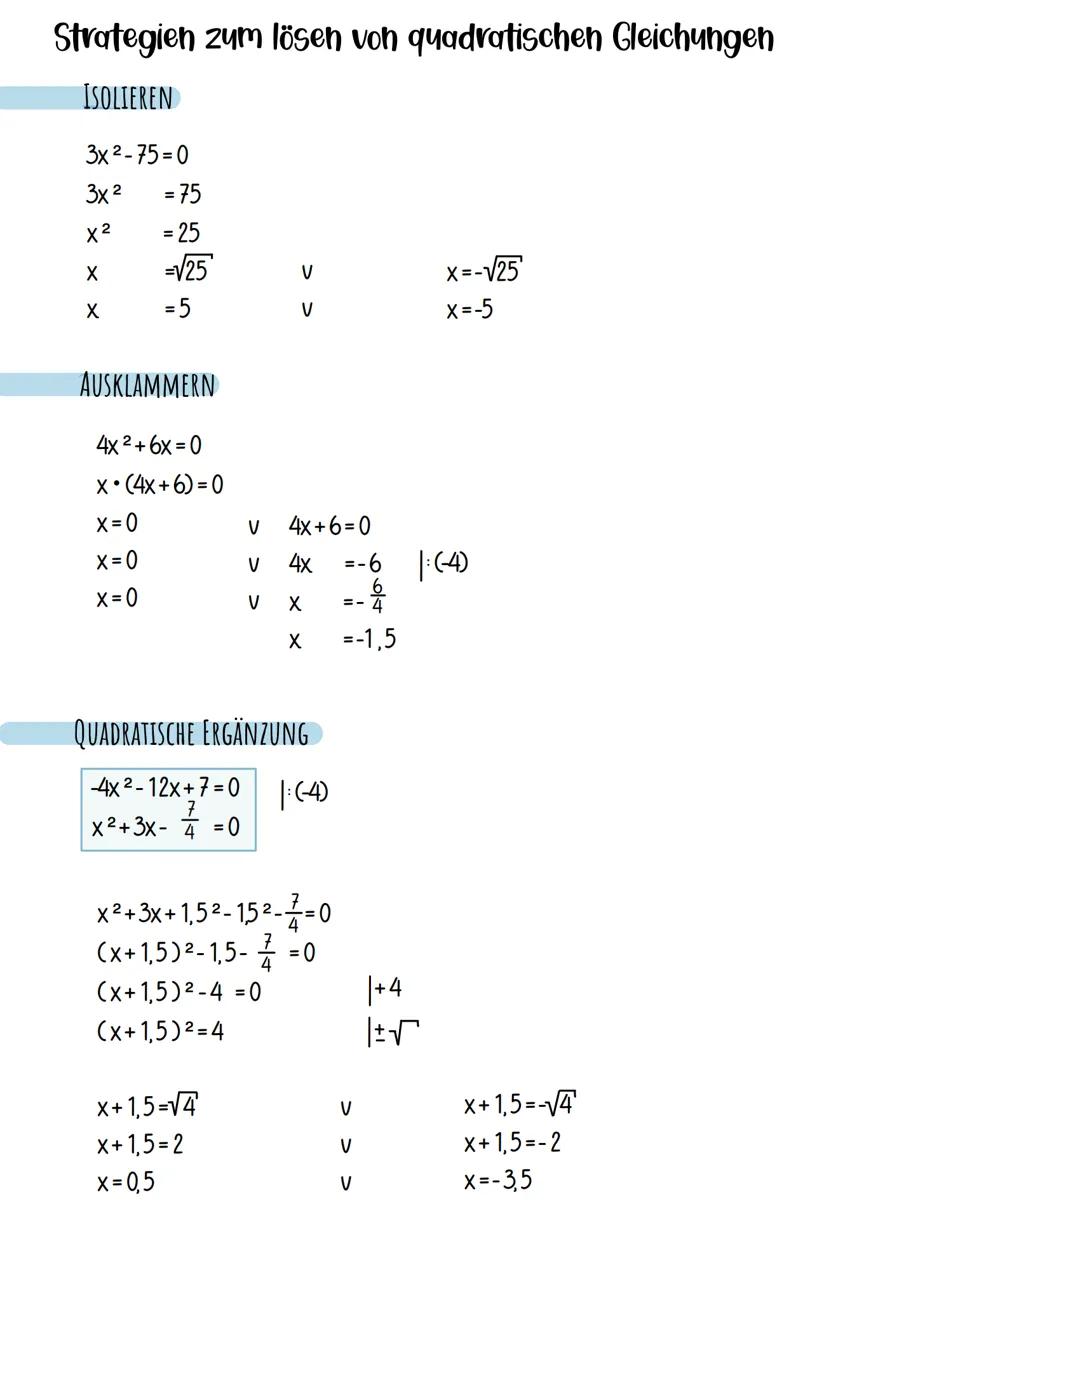 Funktionen und Gleichungen
LINEARE GERADEN
QUADRATISCHE PARABELN
foo=m*x+b
Steigung
/f(x)=3x-1
3x-1=0
3x
= 1
X
= 1/3
NULLSTELLEN BESTIMMEN-
